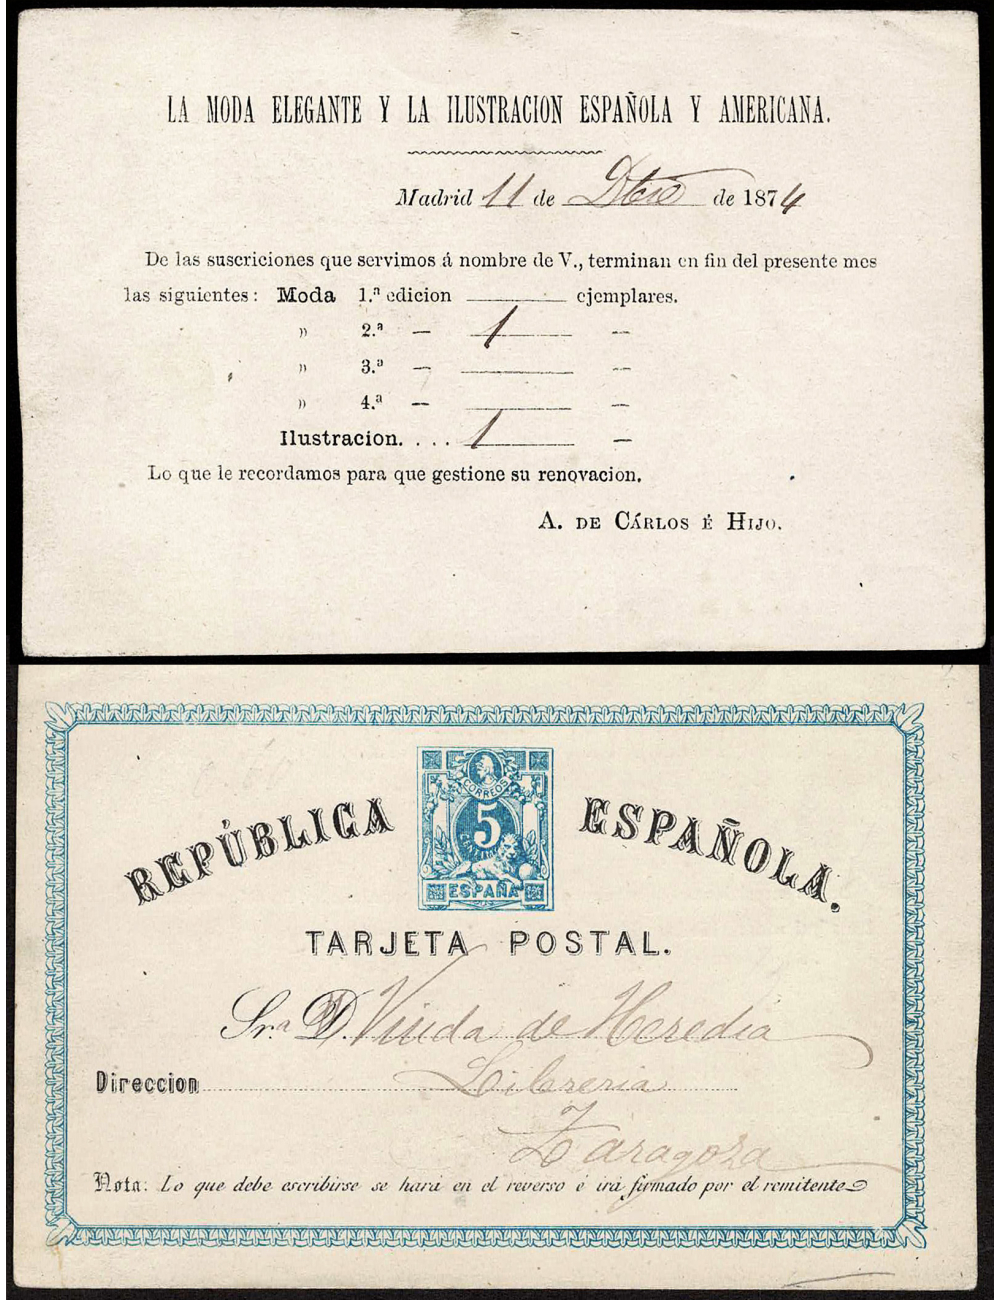 1874 (1 DIC) Madrid a Zaragoza. Impresión privada de Abelardo de Carlos “LA MODA ELEGANTE ESPAÑOLA Y AMERICANA” muy rara y una d